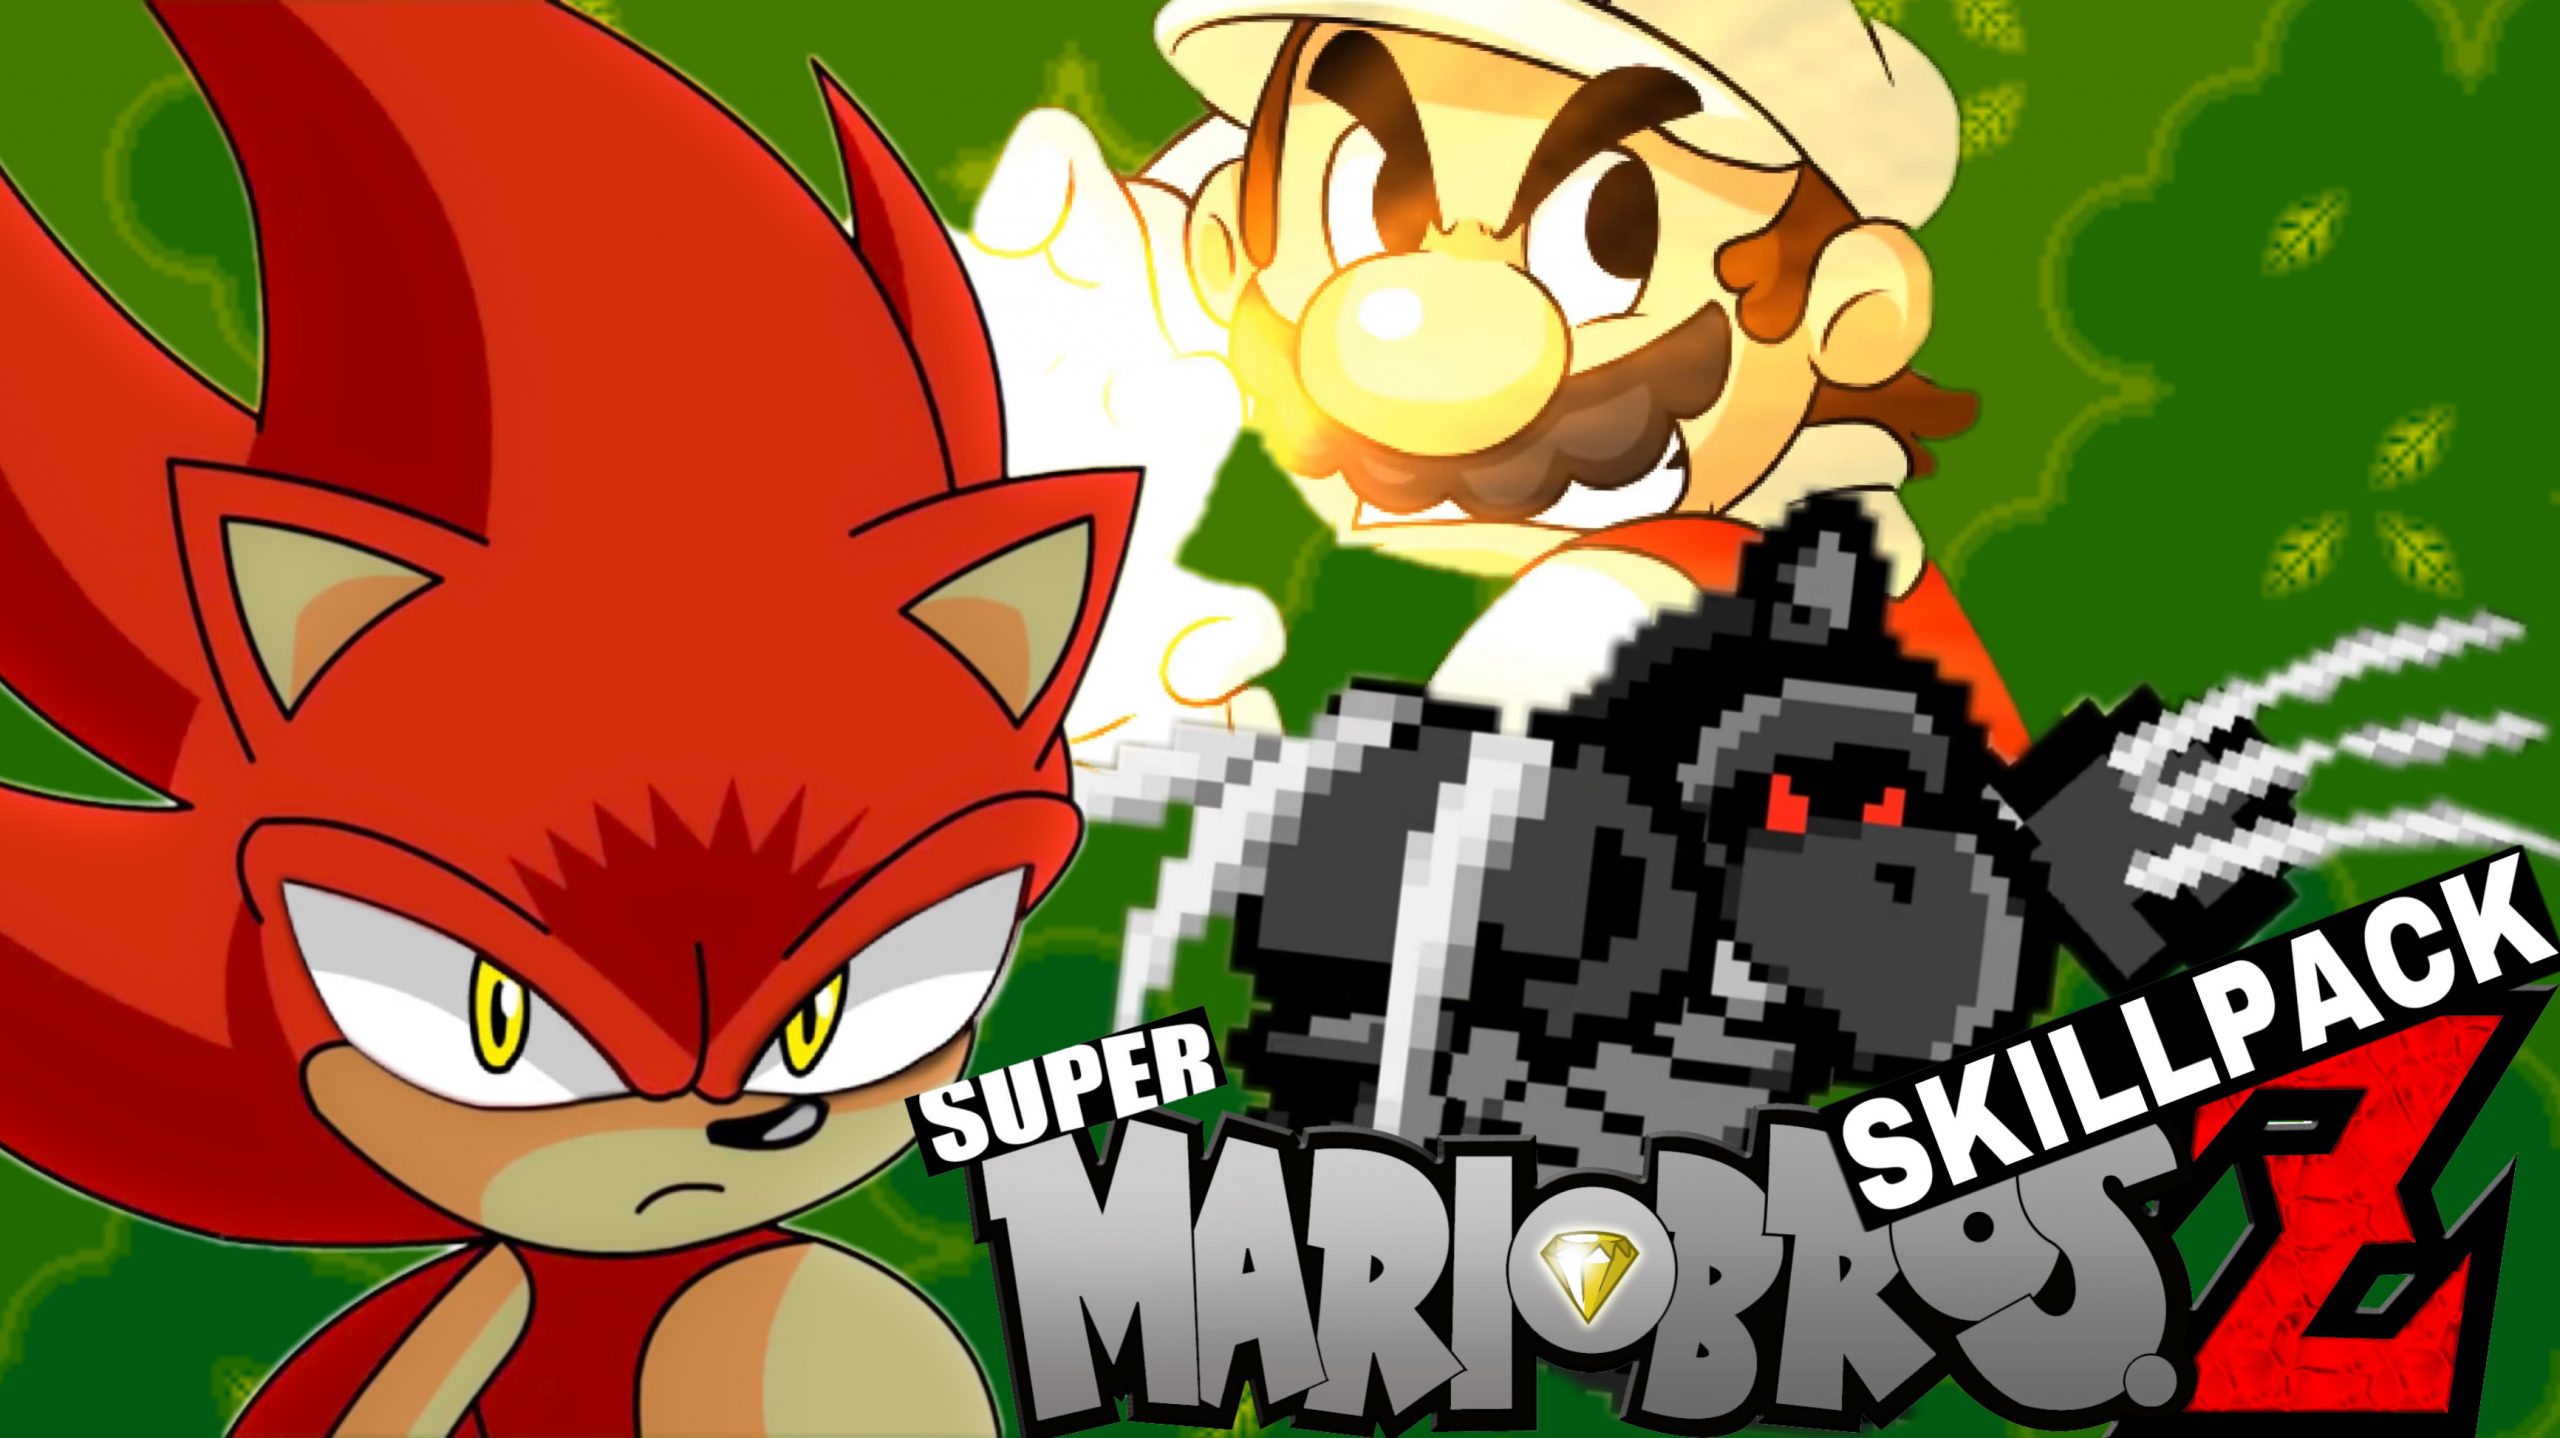 Super Mario Bros Z. Mini Skill Pack